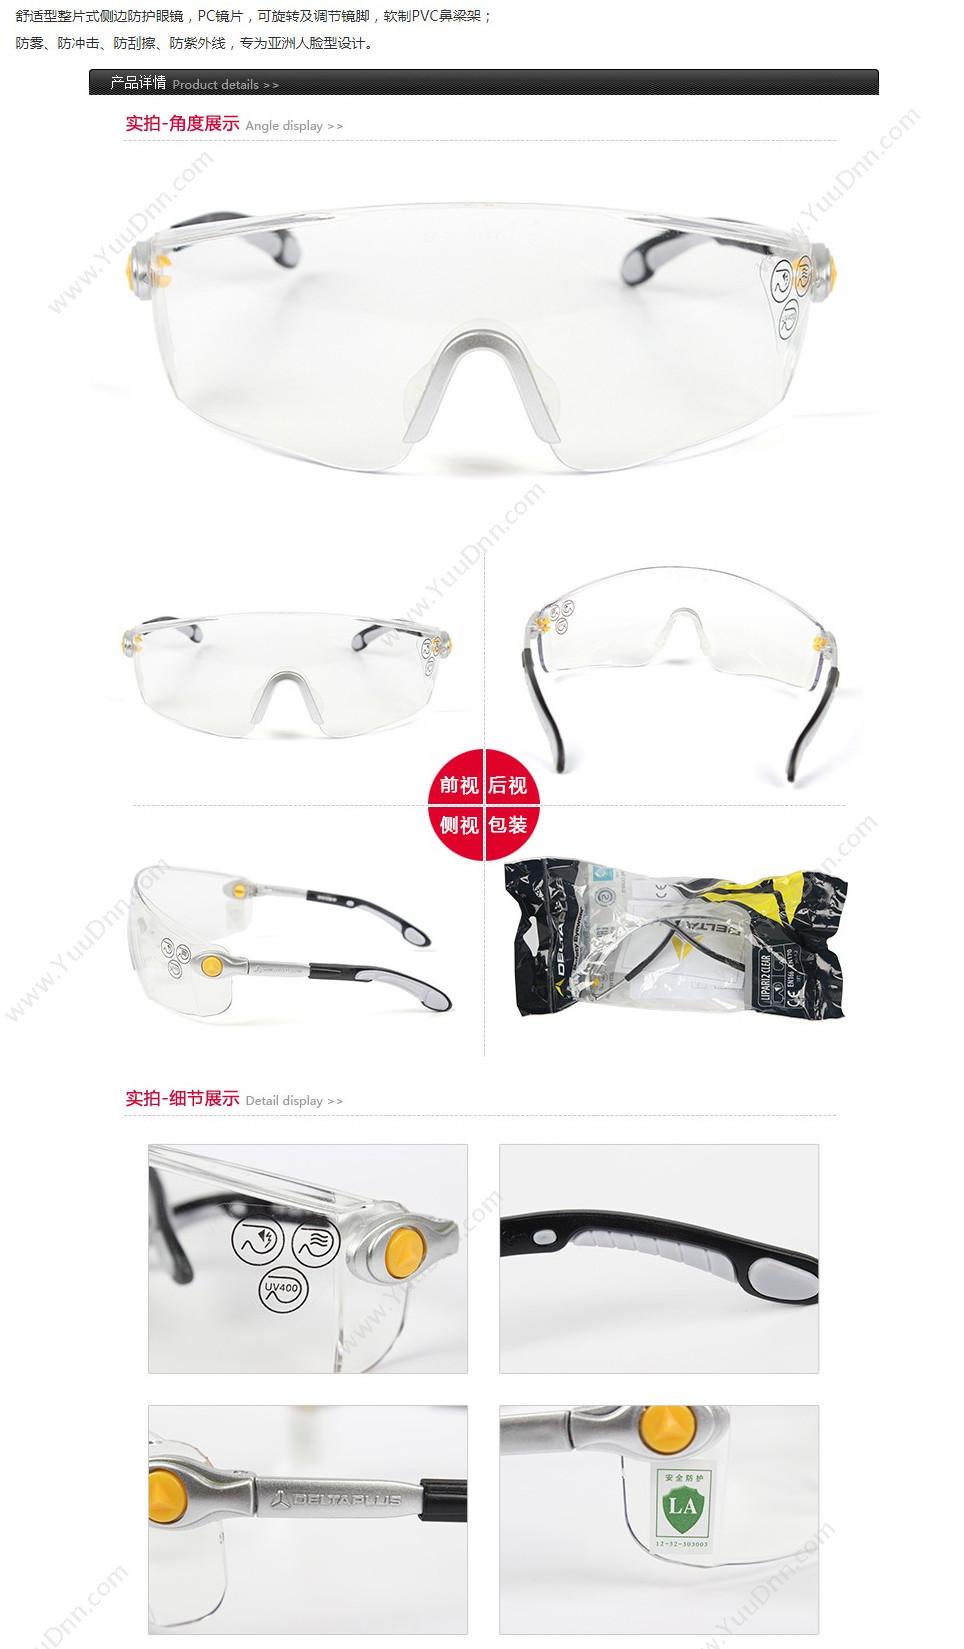 代尔塔 Delta 101117 安全眼镜透明经典款 KILIMANDJARO CLEAR 透明白色 10个/盒 防雾，防刮擦 防护眼镜